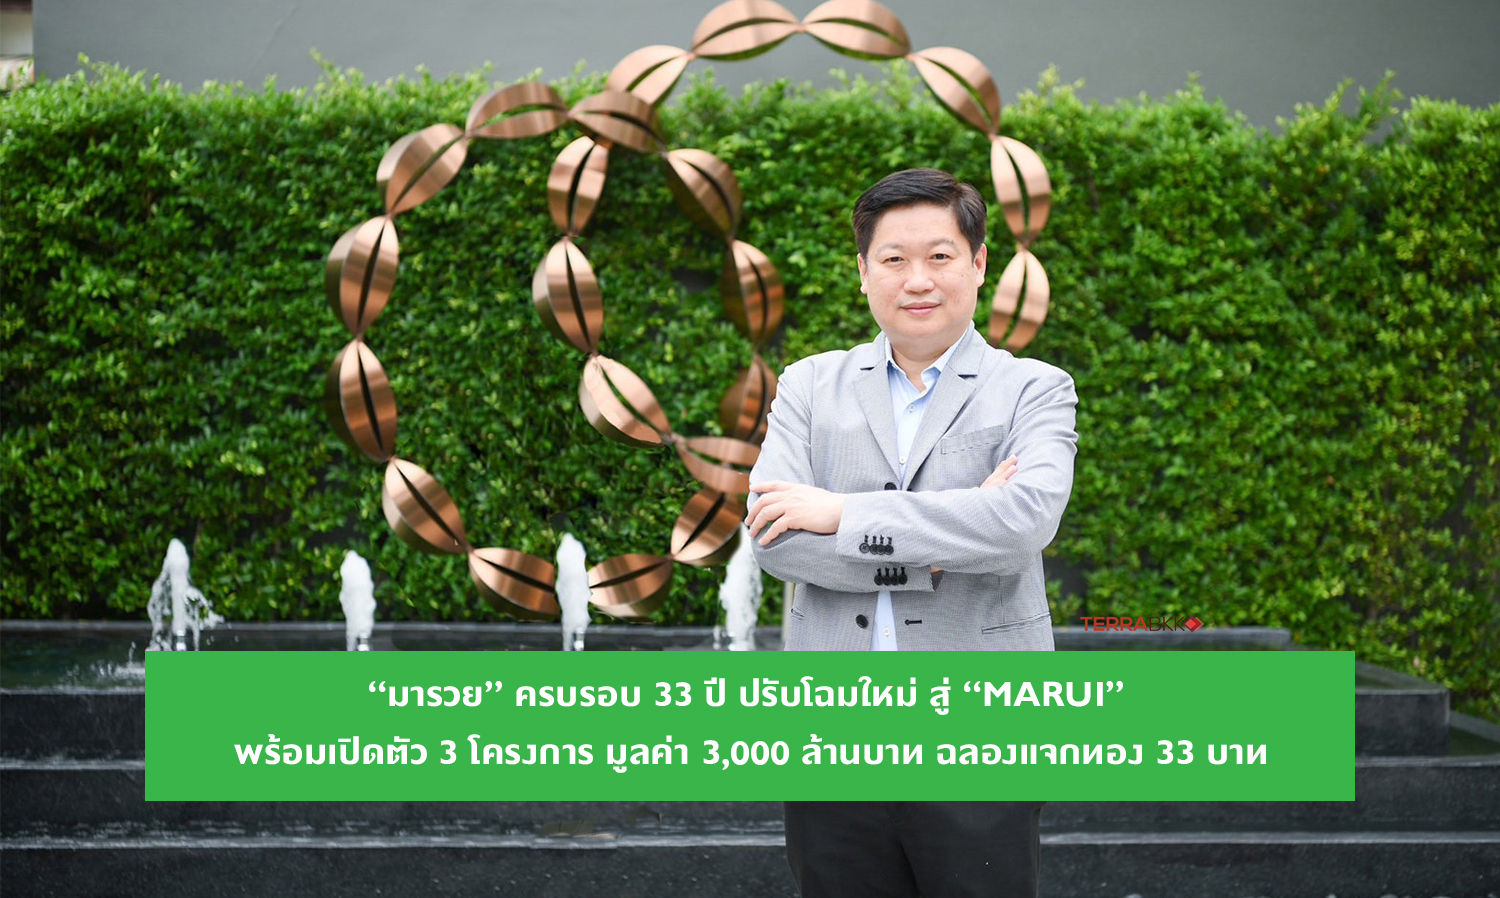 “มารวย” ครบรอบ 33 ปี ปรับโฉมใหม่ สู่ “MARUI” พร้อมเปิดตัว 3 โครงการ มูลค่า 3,000 ล้านบาท ฉลองแจกทอง 33 บาท